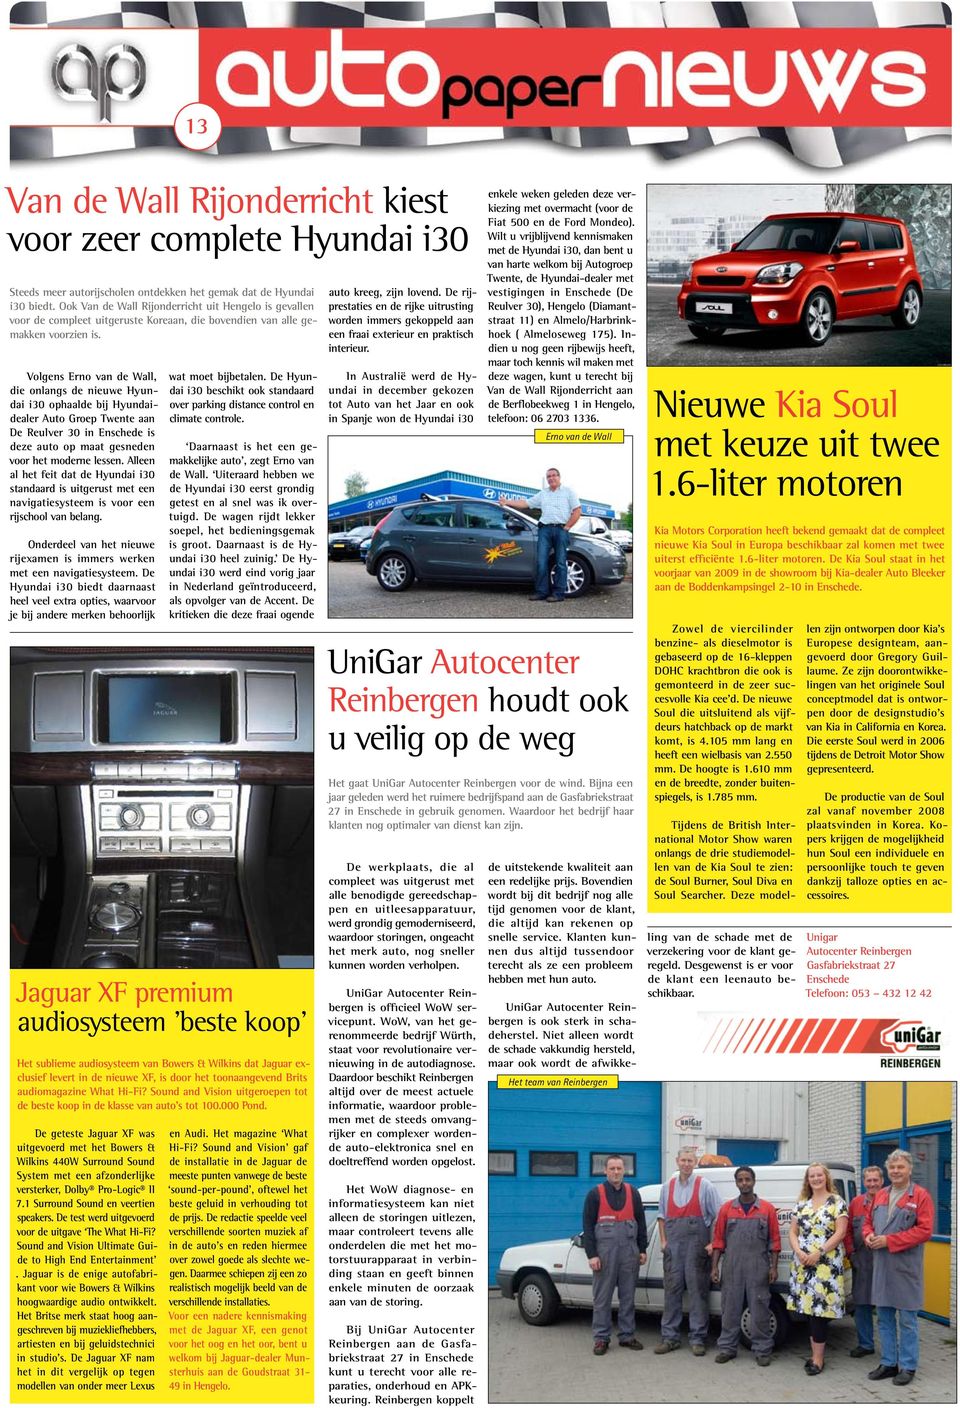 Volgens Erno van de Wall, die onlangs de nieuwe Hyundai i30 ophaalde bij Hyundaidealer Auto Groep Twente aan De Reulver 30 in Enschede is deze auto op maat gesneden voor het moderne lessen.